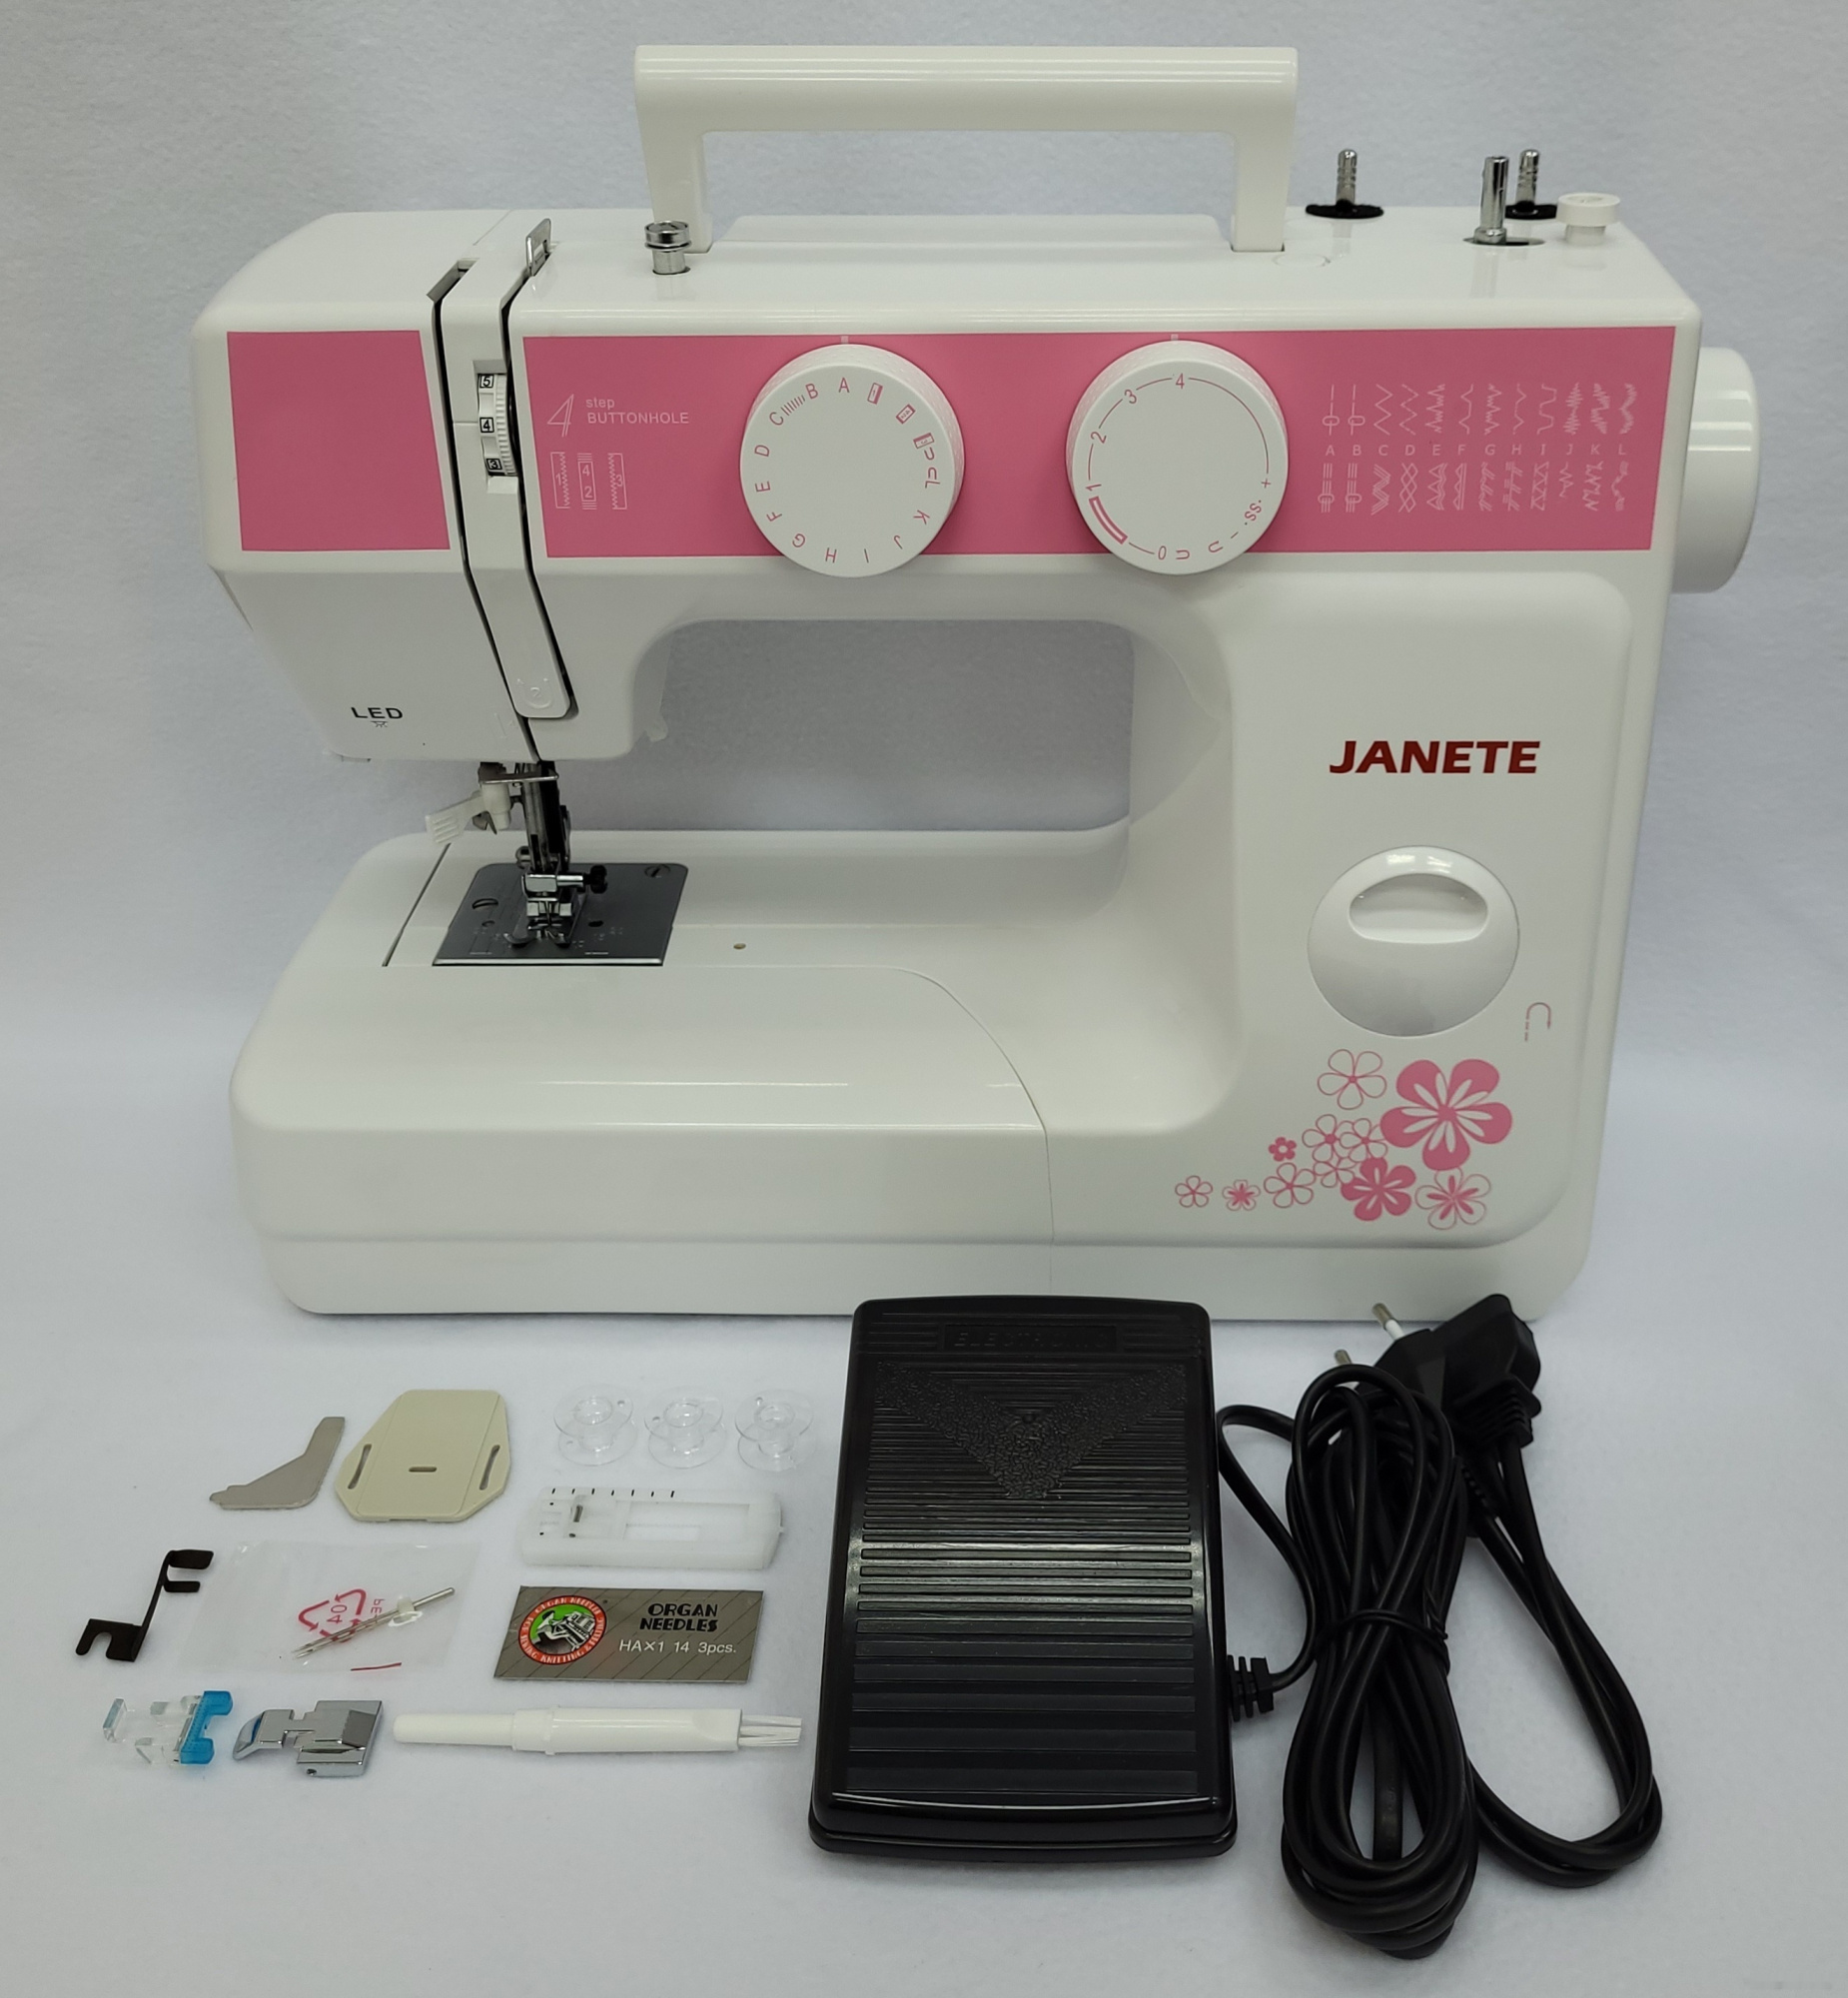 электромеханическая швейная машина janete 989 (розовая)